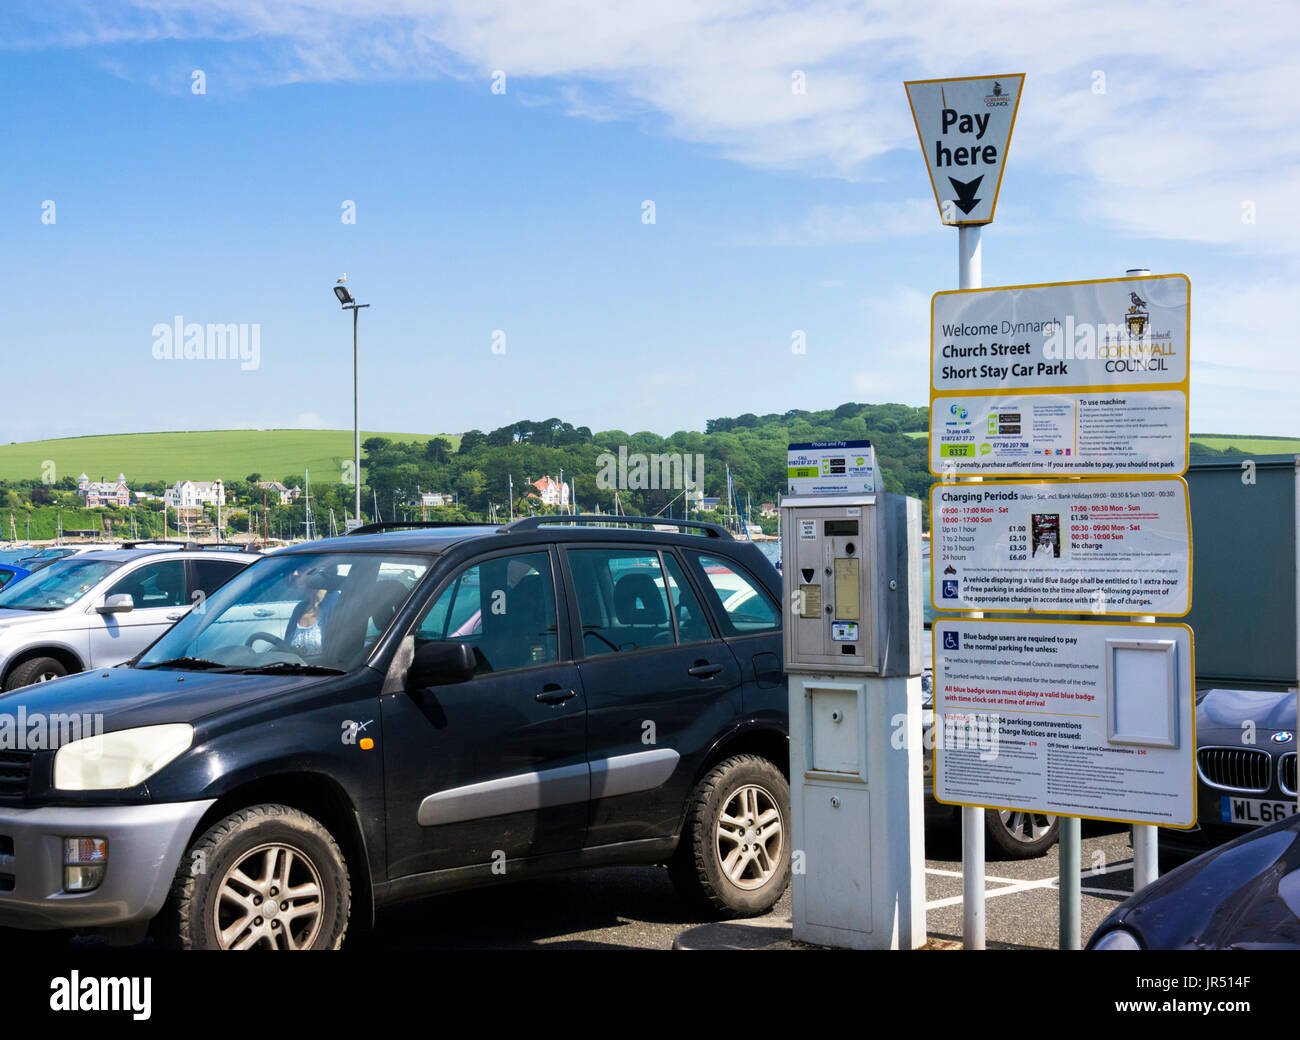 Court séjour parking plein de voitures en été, payé ici machine et accusations, England, UK Banque D'Images